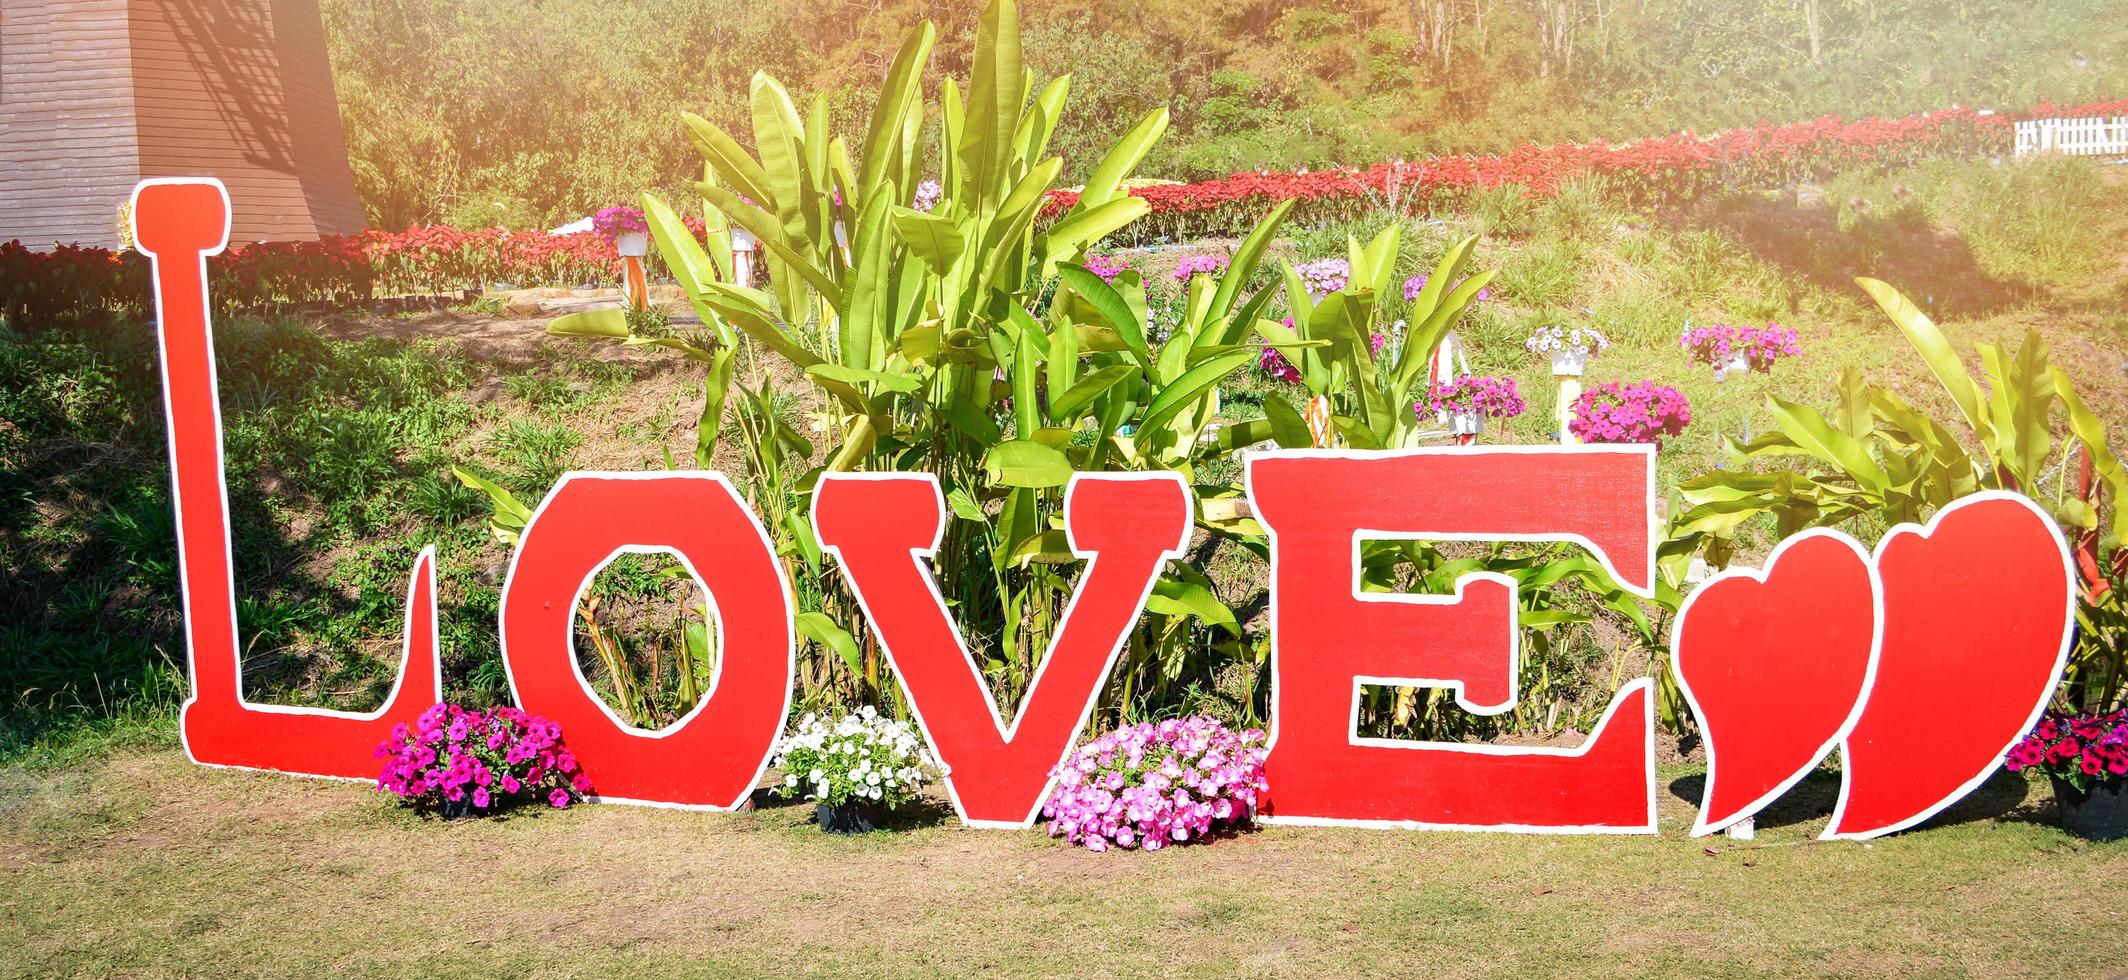 étiquette de signe d'amour texte dans le jardin d'amour pour toile de fond prendre des photos avec fond de fleur à la saint valentin